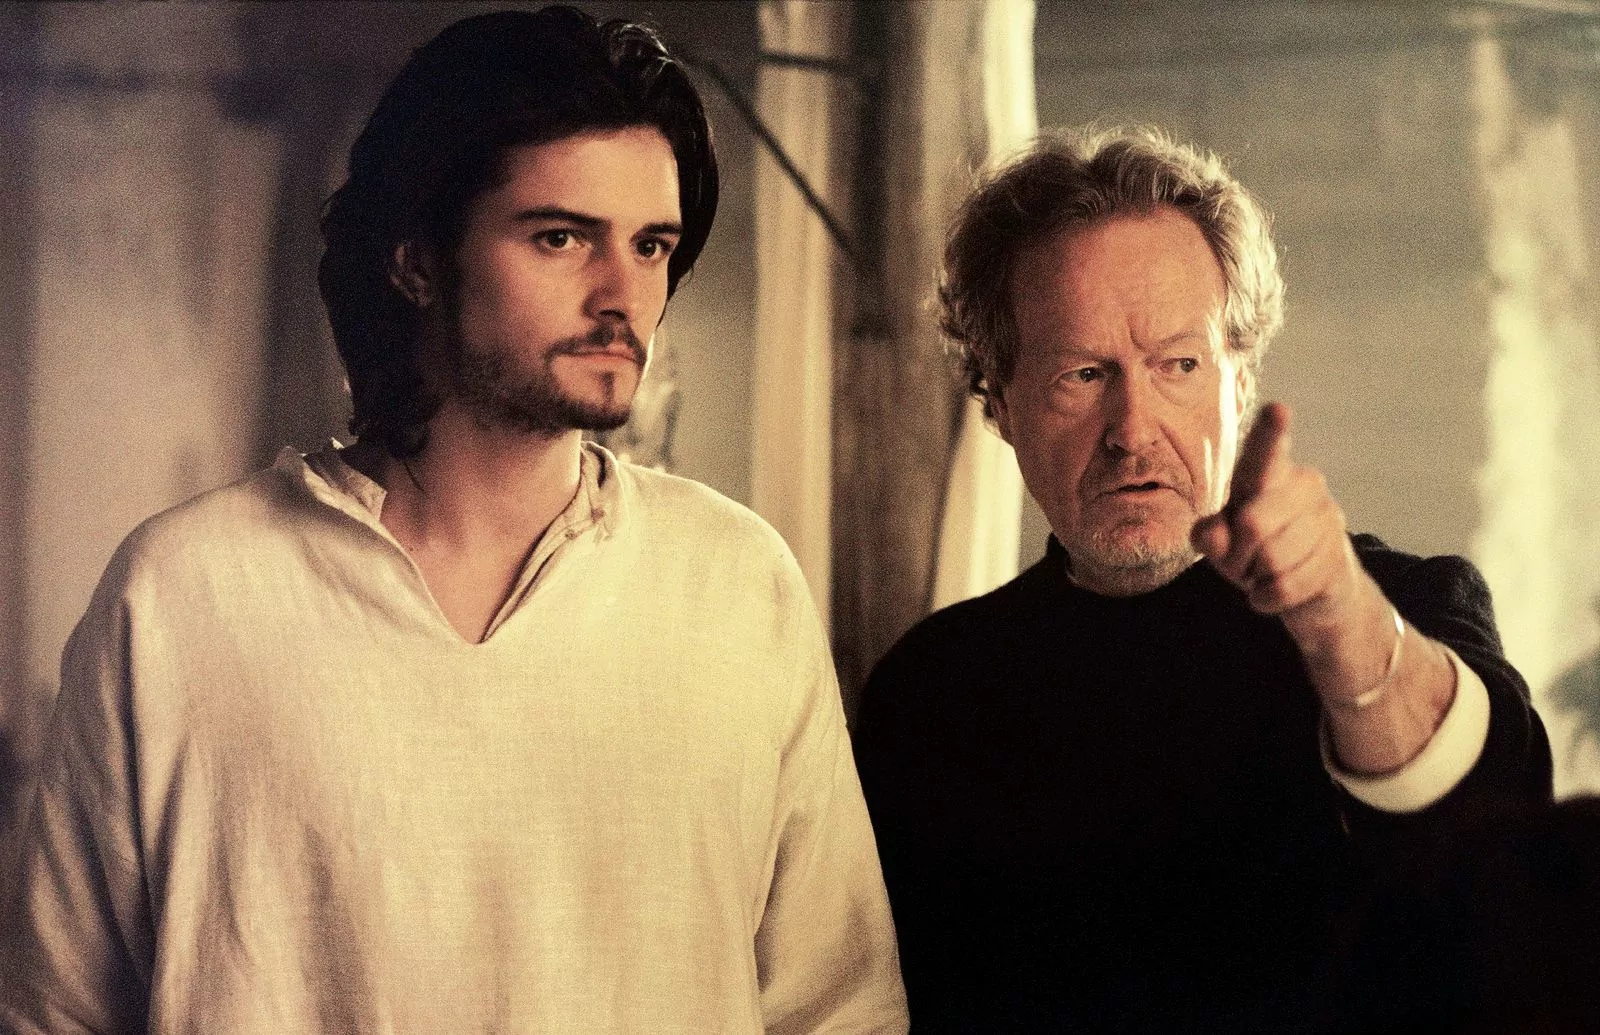 Орландо Блум и режиссер Ридли Скотт на съемках фильма «Царство небесное», 2005 г.